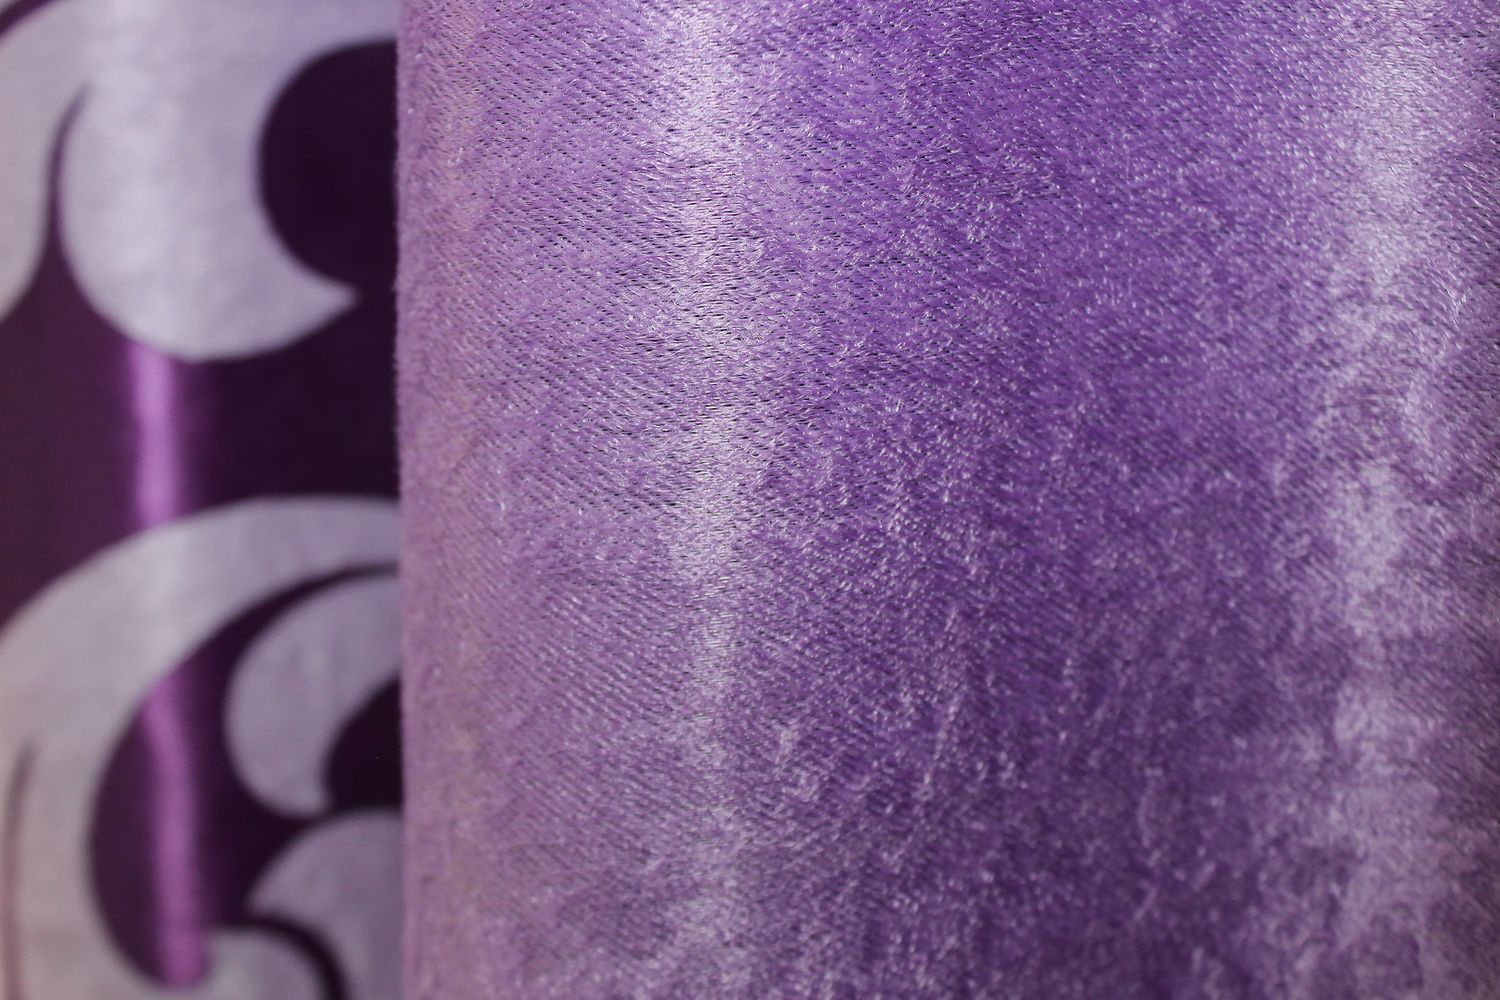 Комбинированные шторы из ткани блэкаут-софт цвет фиолетовый с сиреневым 016дк (1000-129-1000ш), Фиолетовый с сиреневым, Комплект штор (2шт. 1,8х2,7м.), Классические, Длинные, 1,8 м., 2,7 м., 180, 270, 2 - 3 м., В комплекте 2 шт., Тесьма